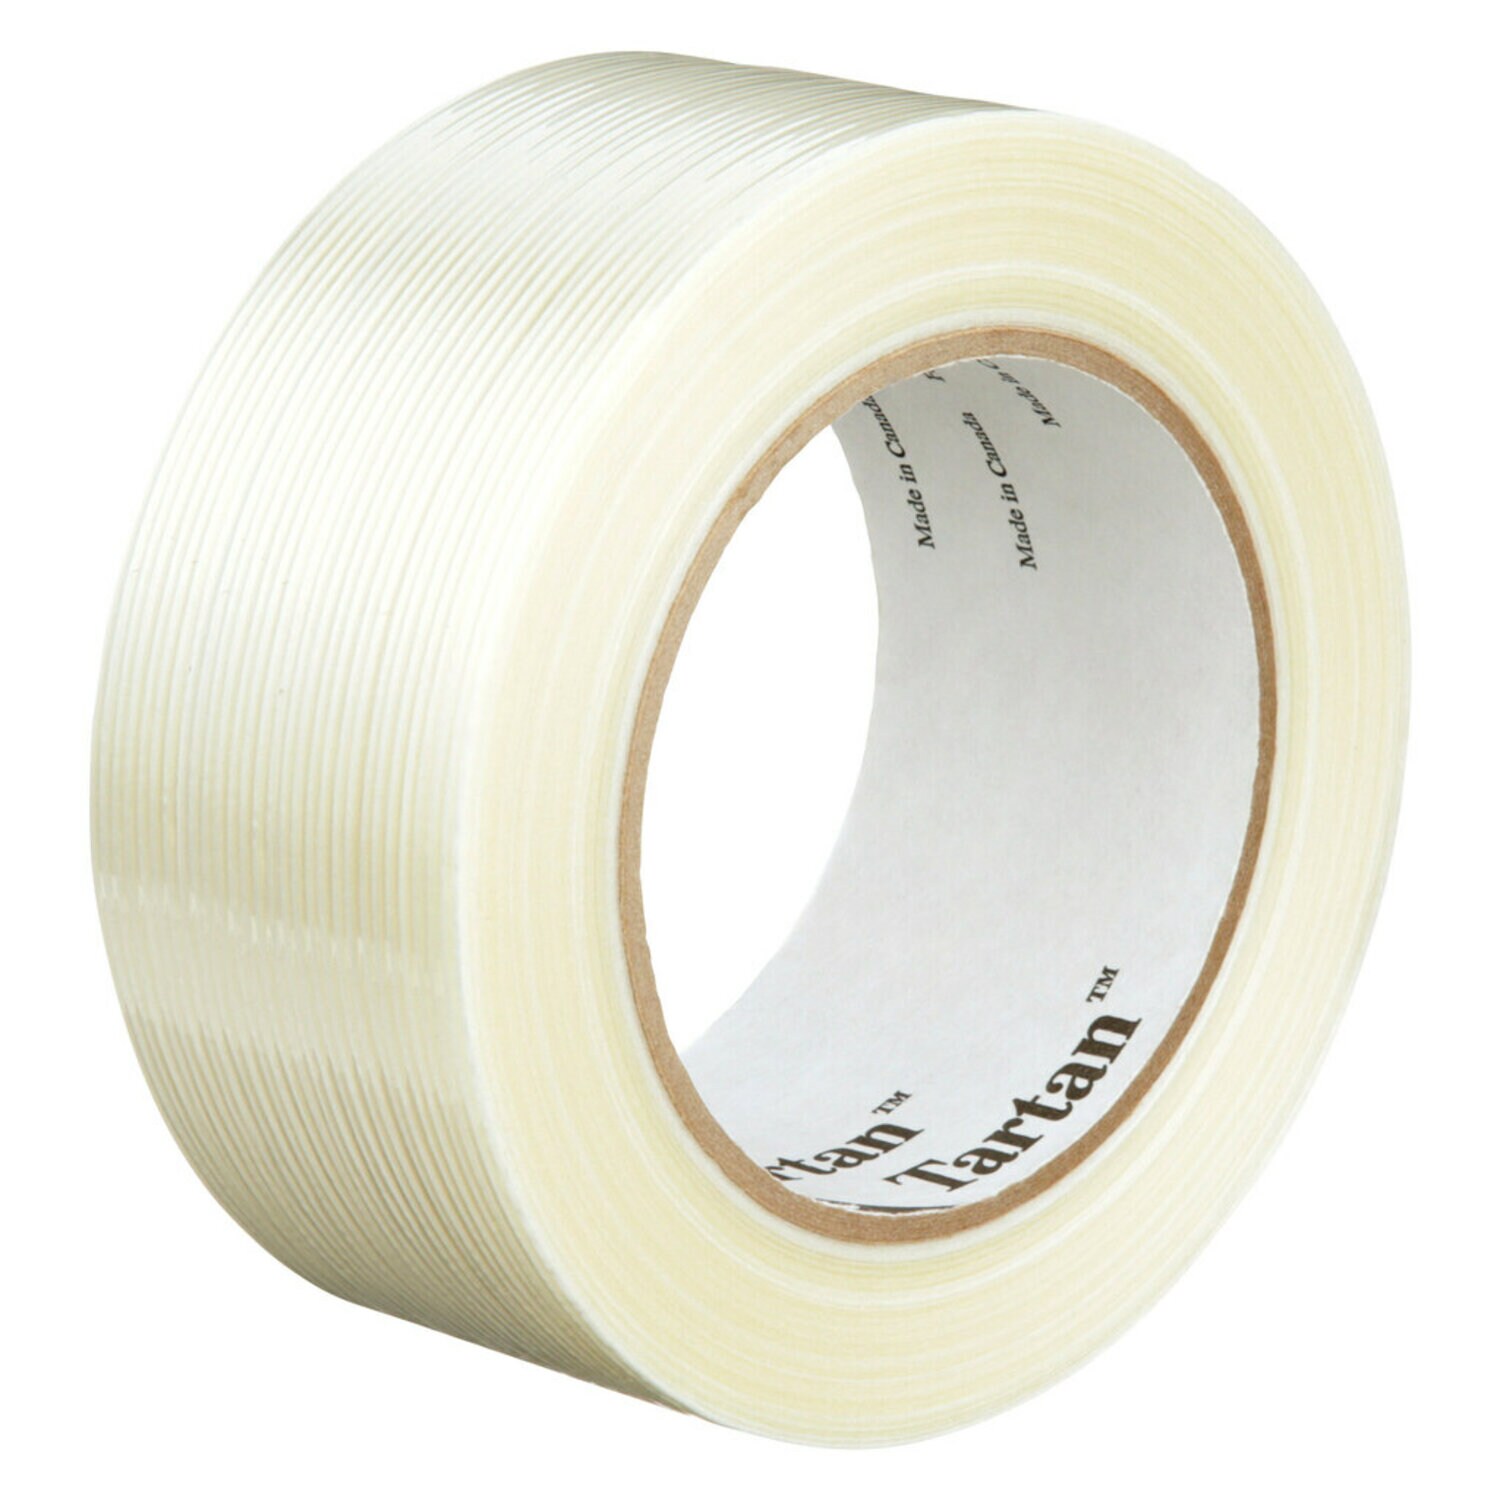 7000124385 - Tartan Filament Tape 8934, Clear, 48 mm x 100 m, 4 mil, 24 rolls per
case